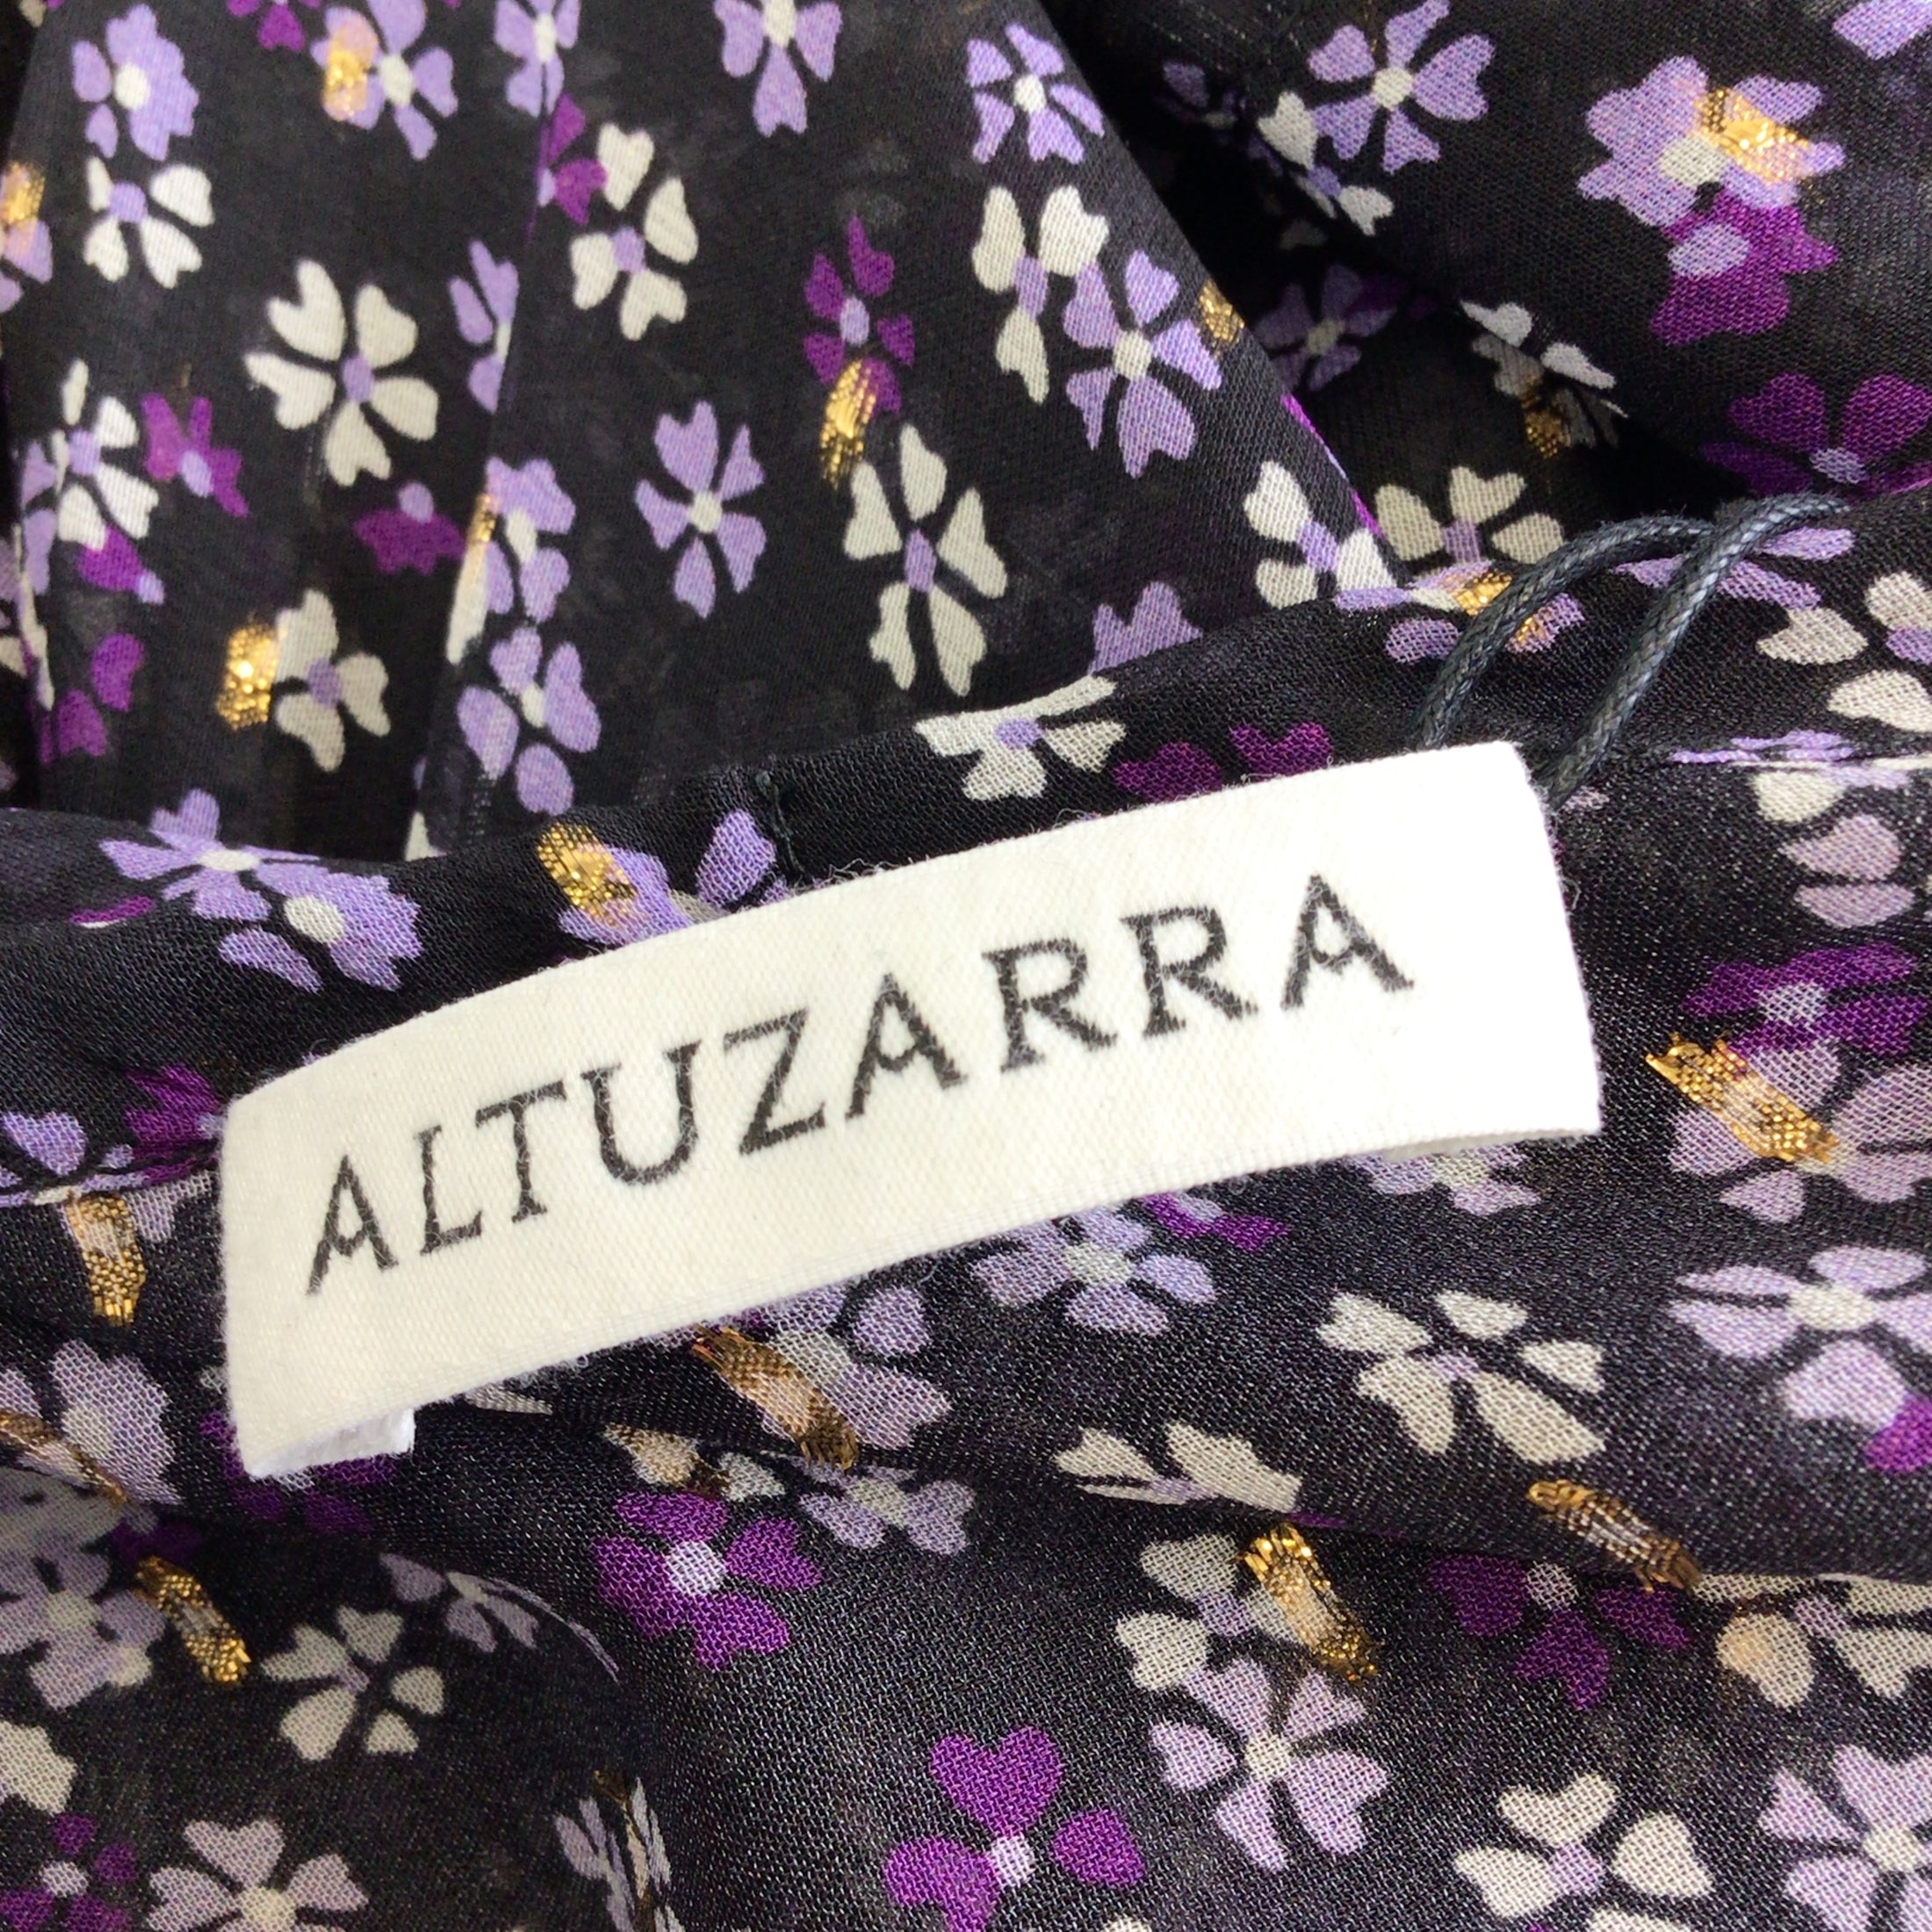 Altuzarra Black / Purple Multi Floral Printed Silk Blouse